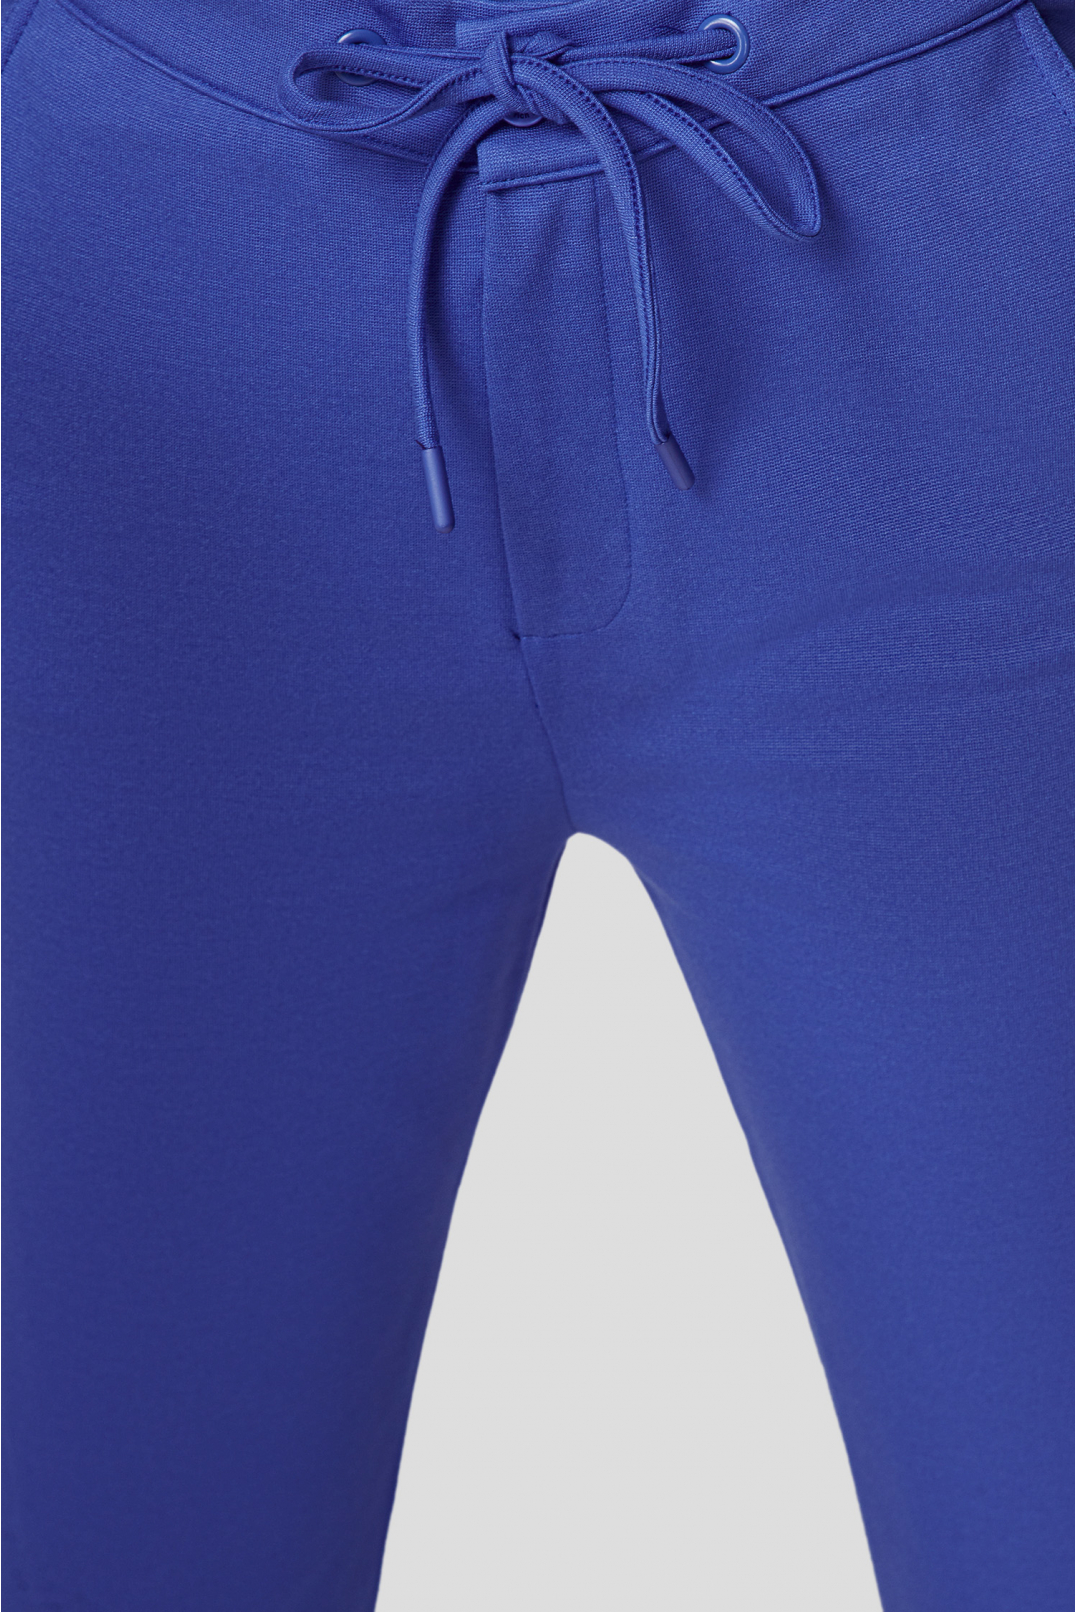 Женский синий костюм (жакет, брюки) - 4